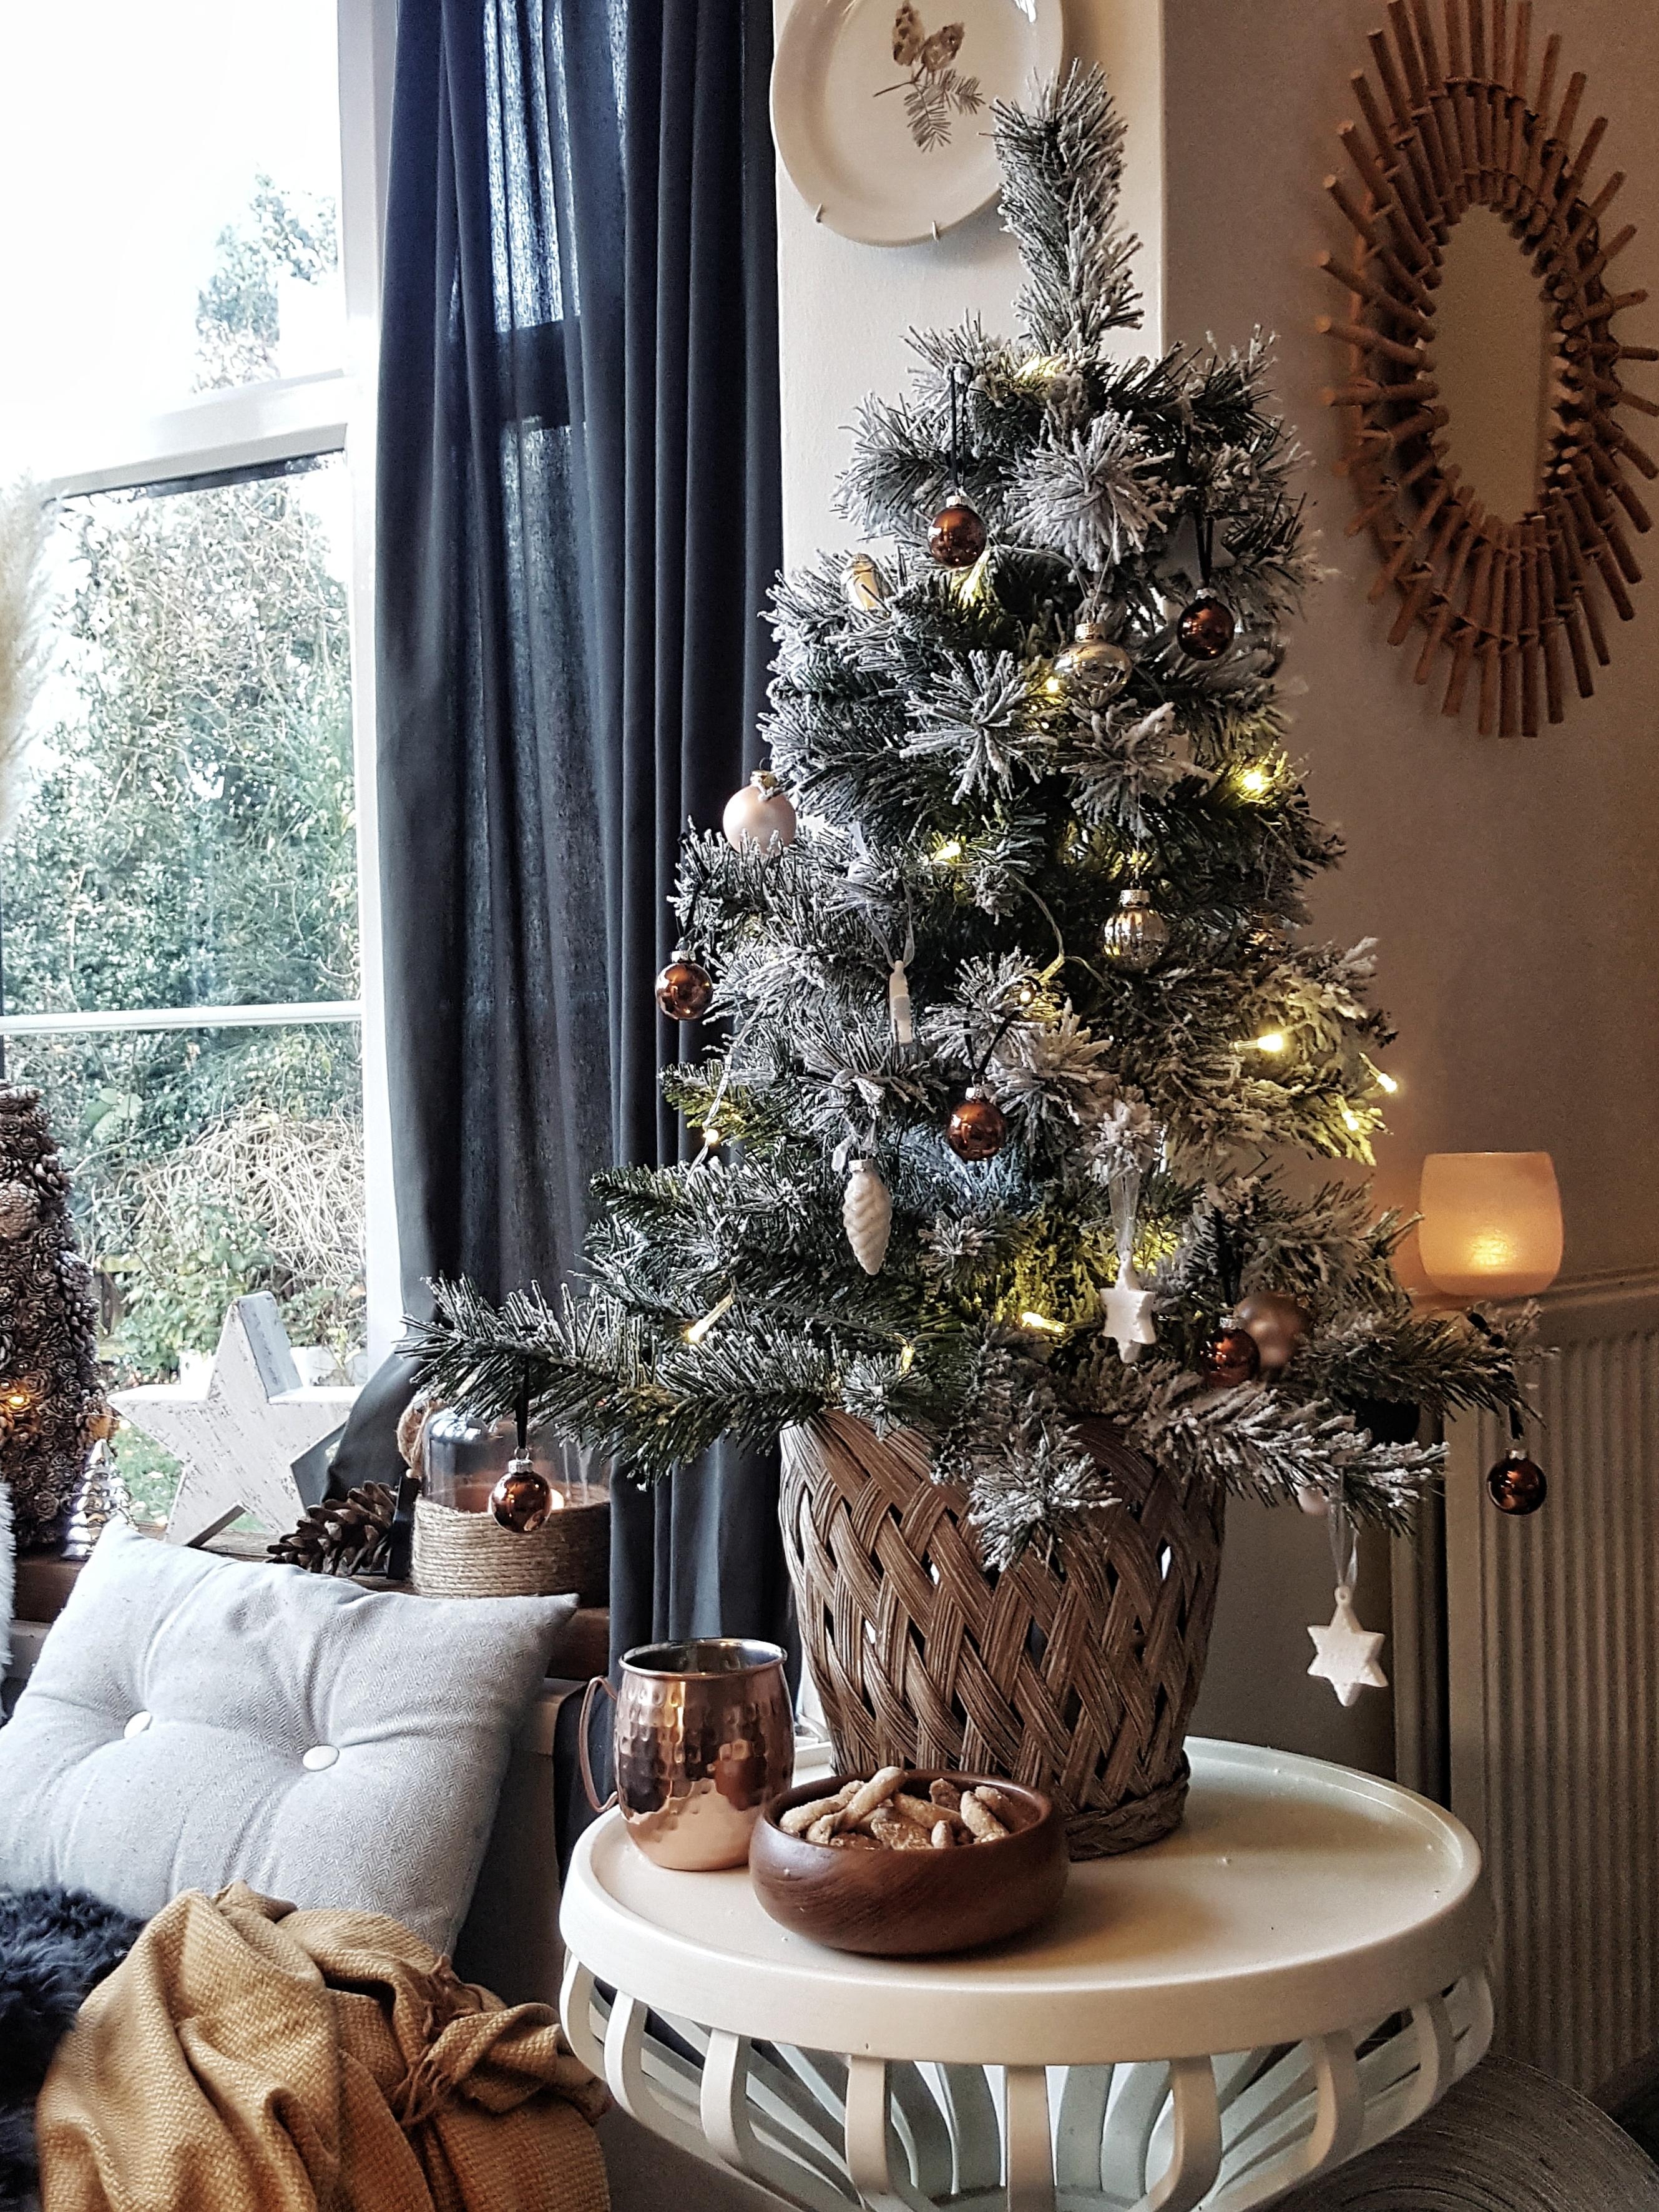  #wohnzimmer #weihnachtsbaum #christmas #weihnachten #advent 
#weihnachtsdeko #gemütlicheswohnzimmer #xmas #couchstyle
